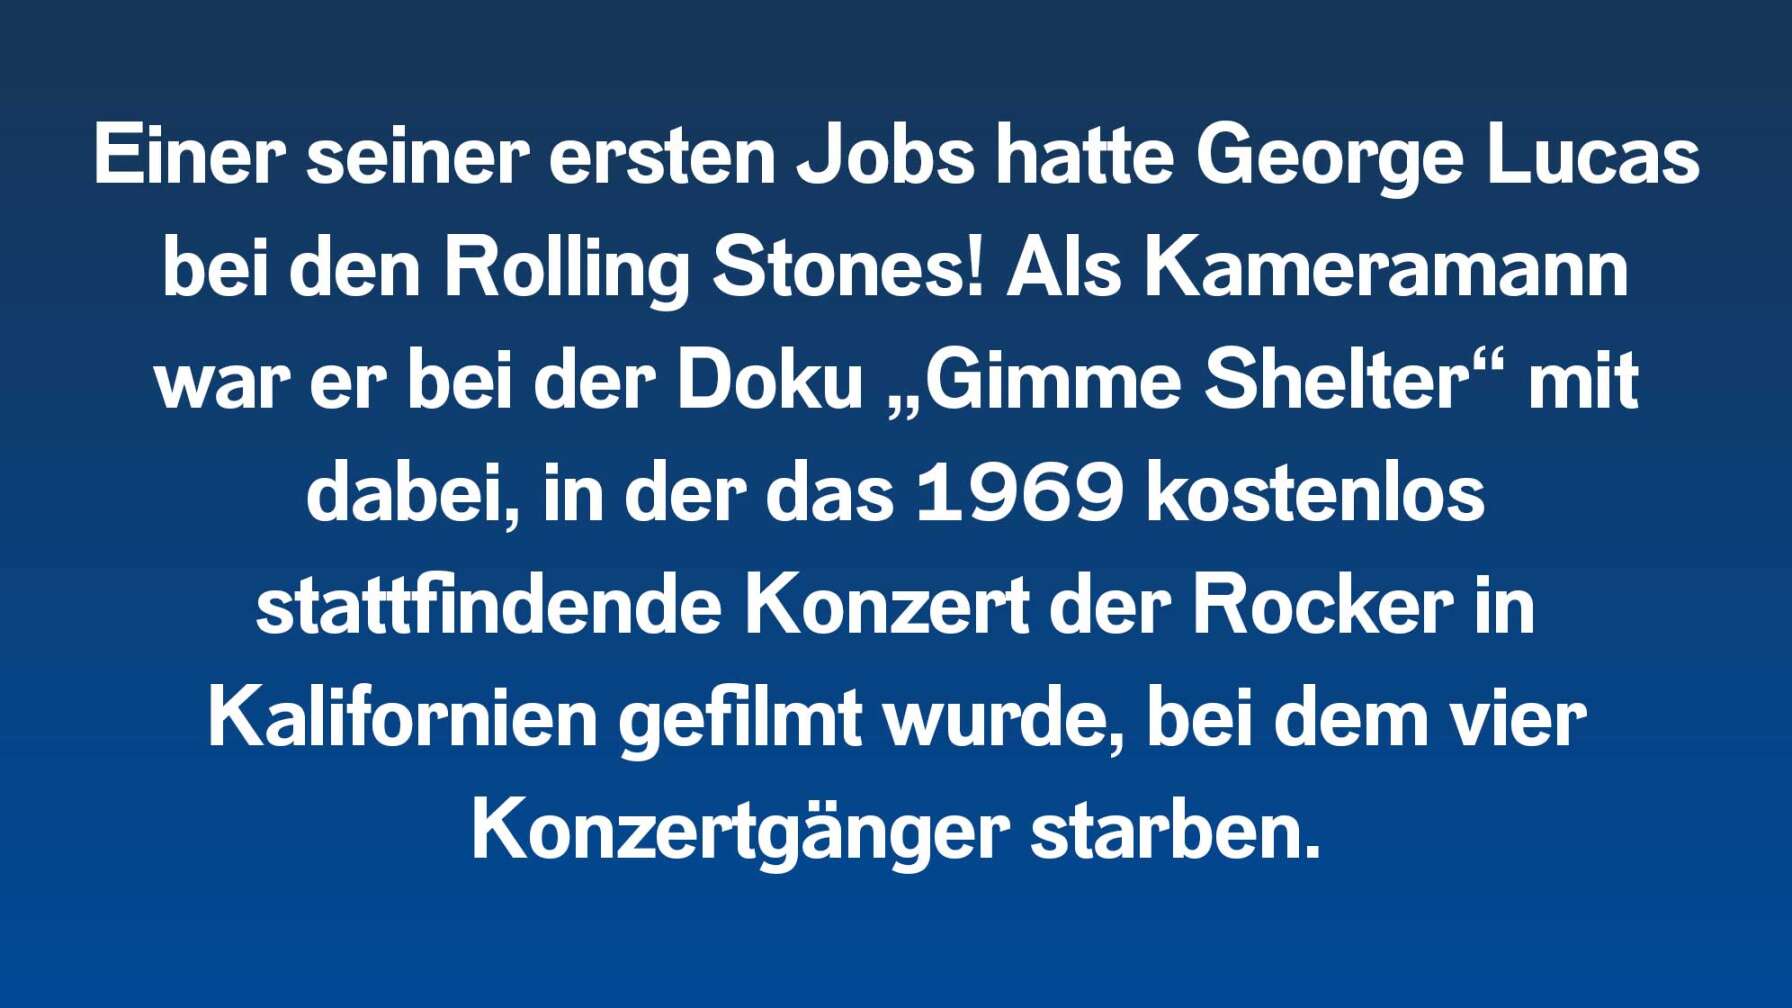 Einer seiner ersten Jobs hatte George Lucas bei den Rolling Stones! Als Kameramann war er bei der Doku „Gimme Shelter“ mit dabei, in der das 1969 kostenlos stattfindende Konzert der Rocker in Kalifornien porträtiert wurde, bei dem vier Konzertgänger starben.